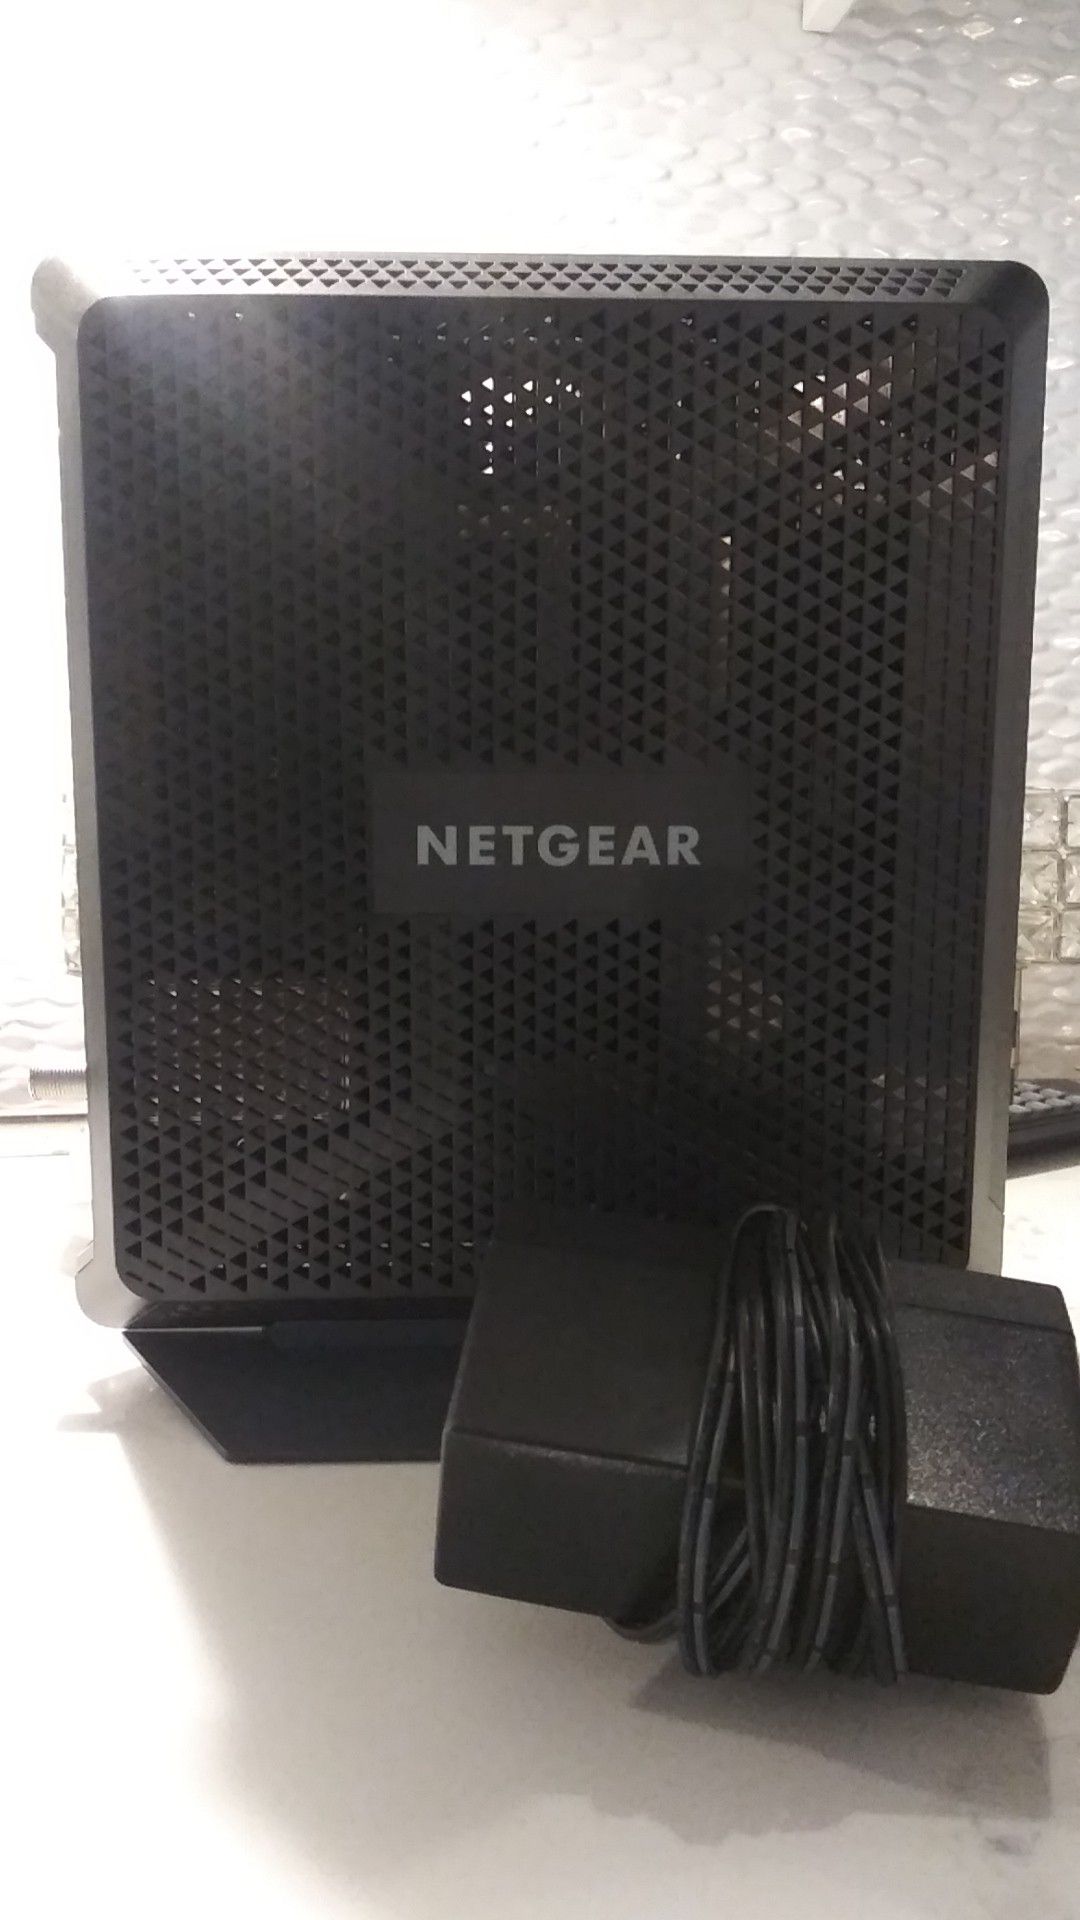 NETGEAR modem/router AC1900